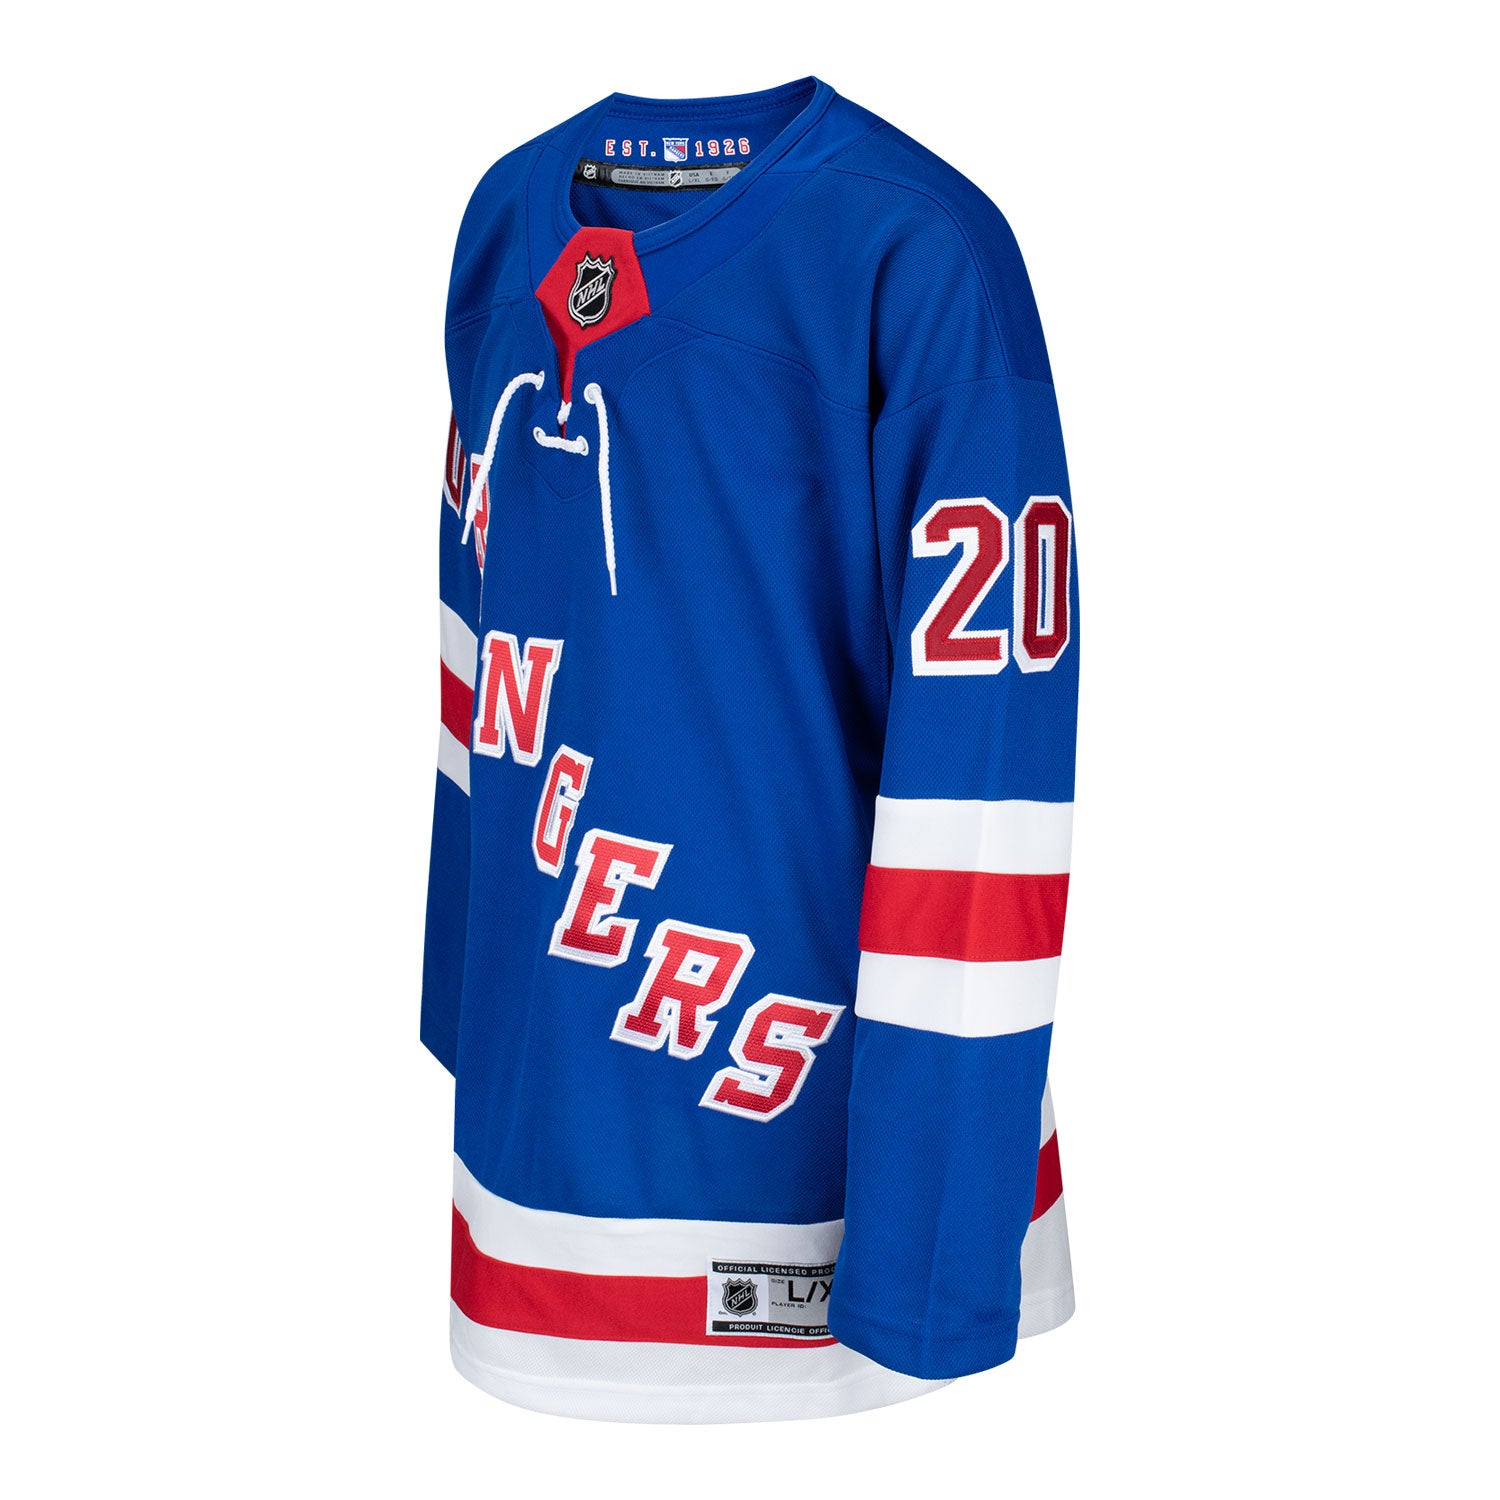 FREE shipping Chris Kreider New York Hockey Shirt, Unisex tee